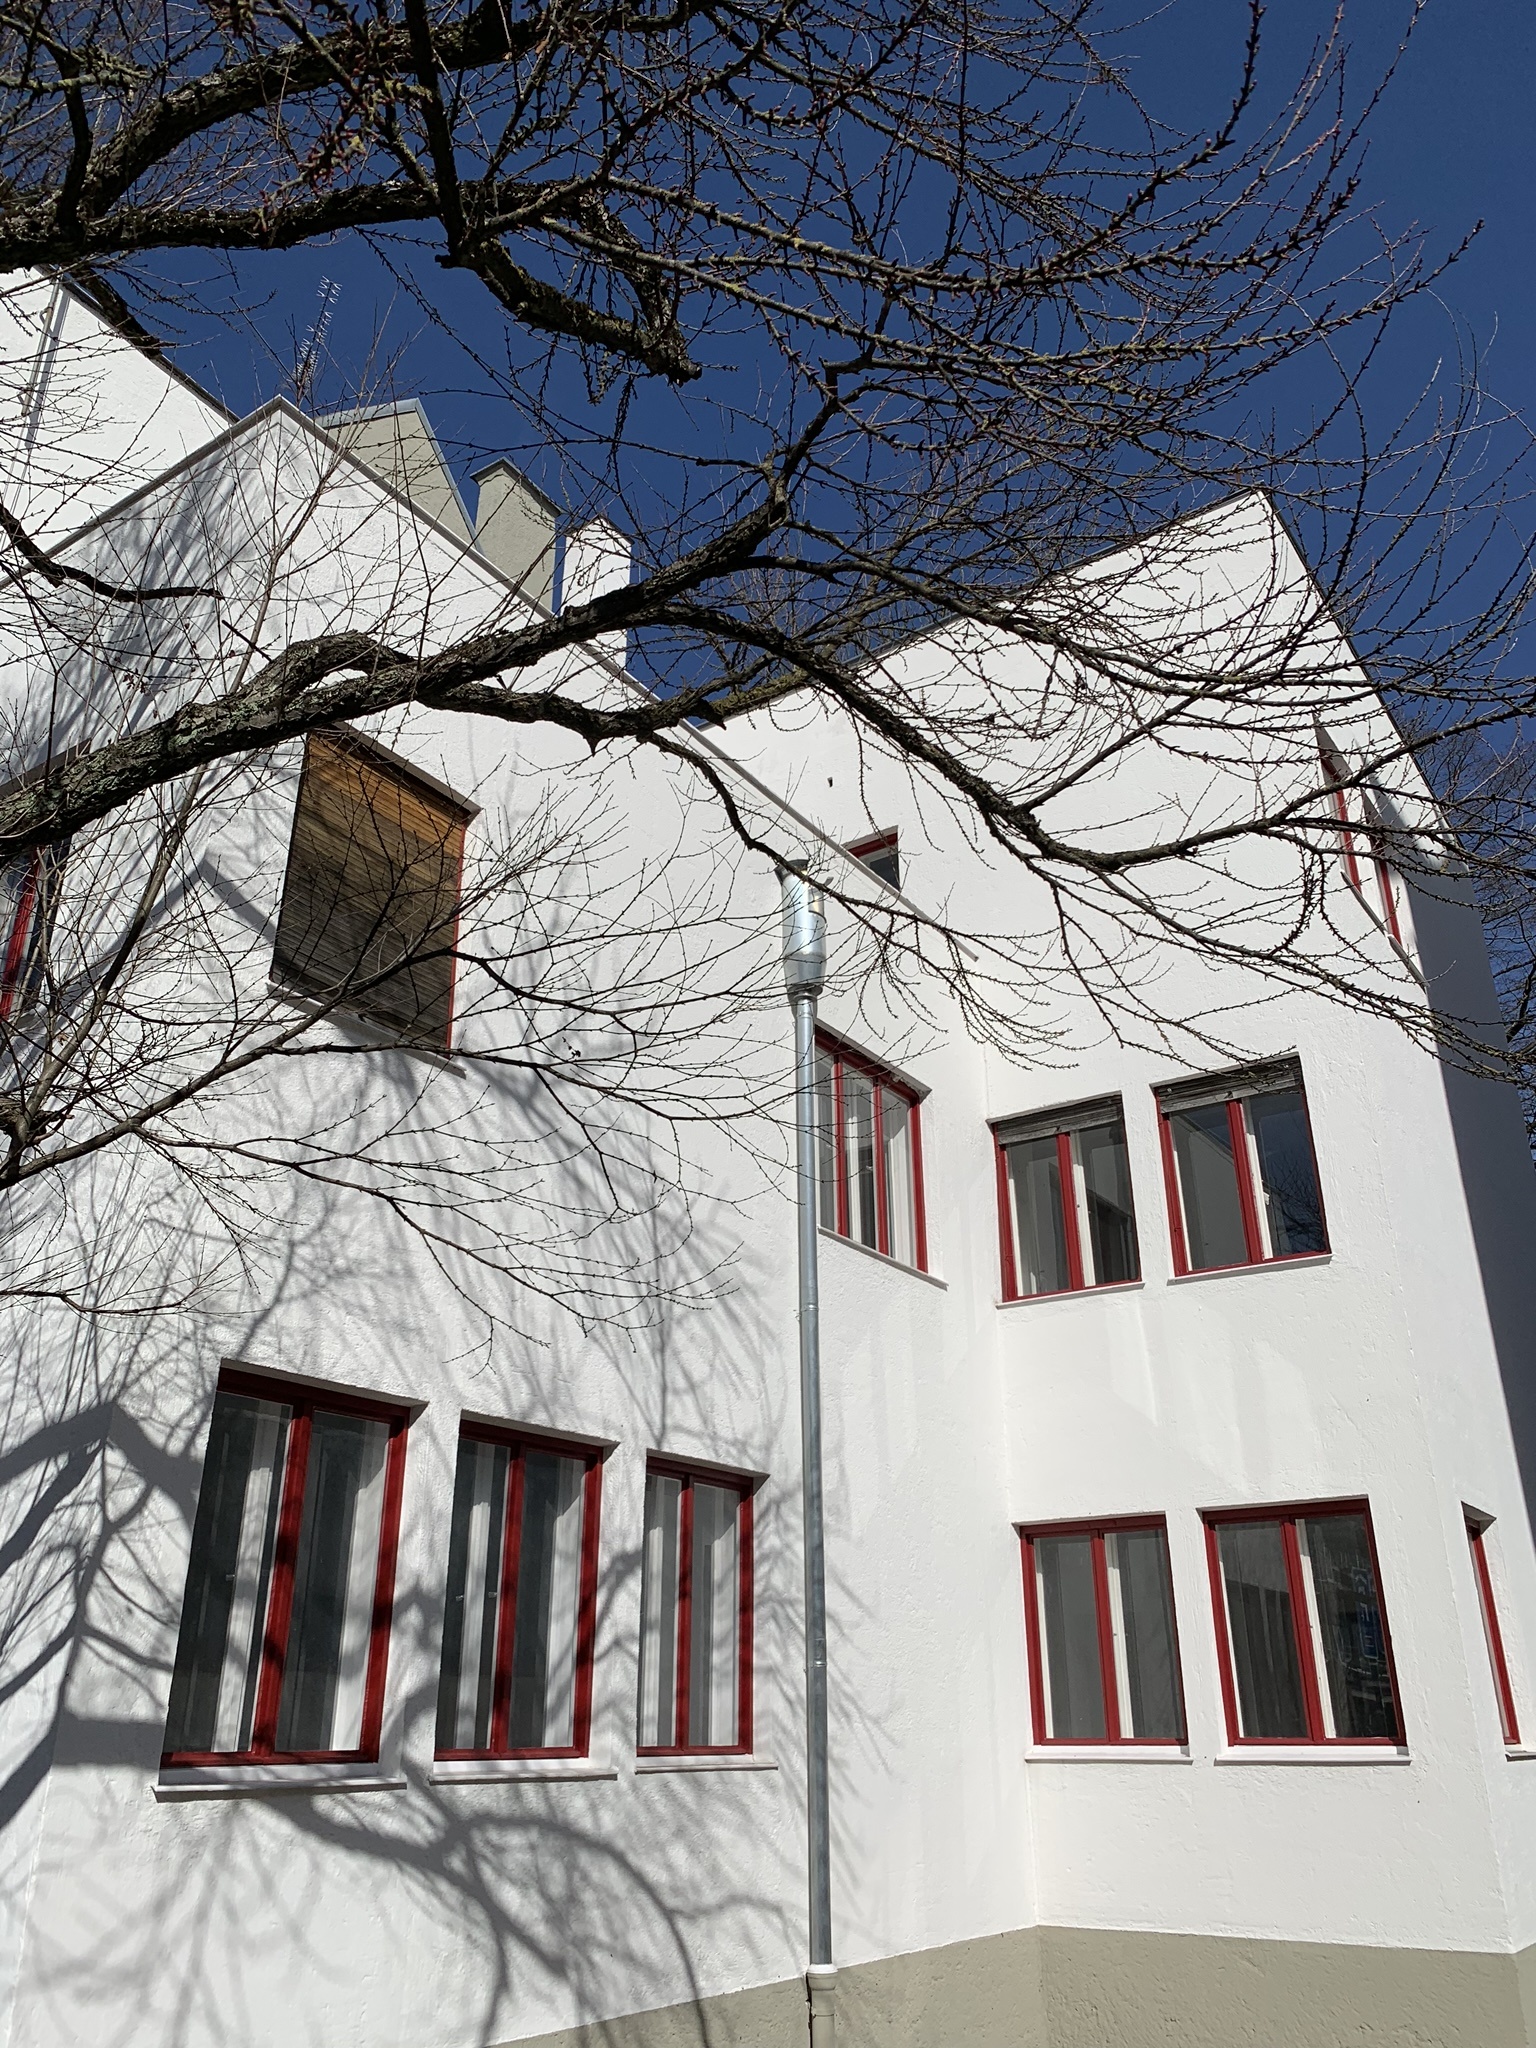 Büro- und Wohnhaus Wechs, 1929-1931. Architekt: Thomas Wechs